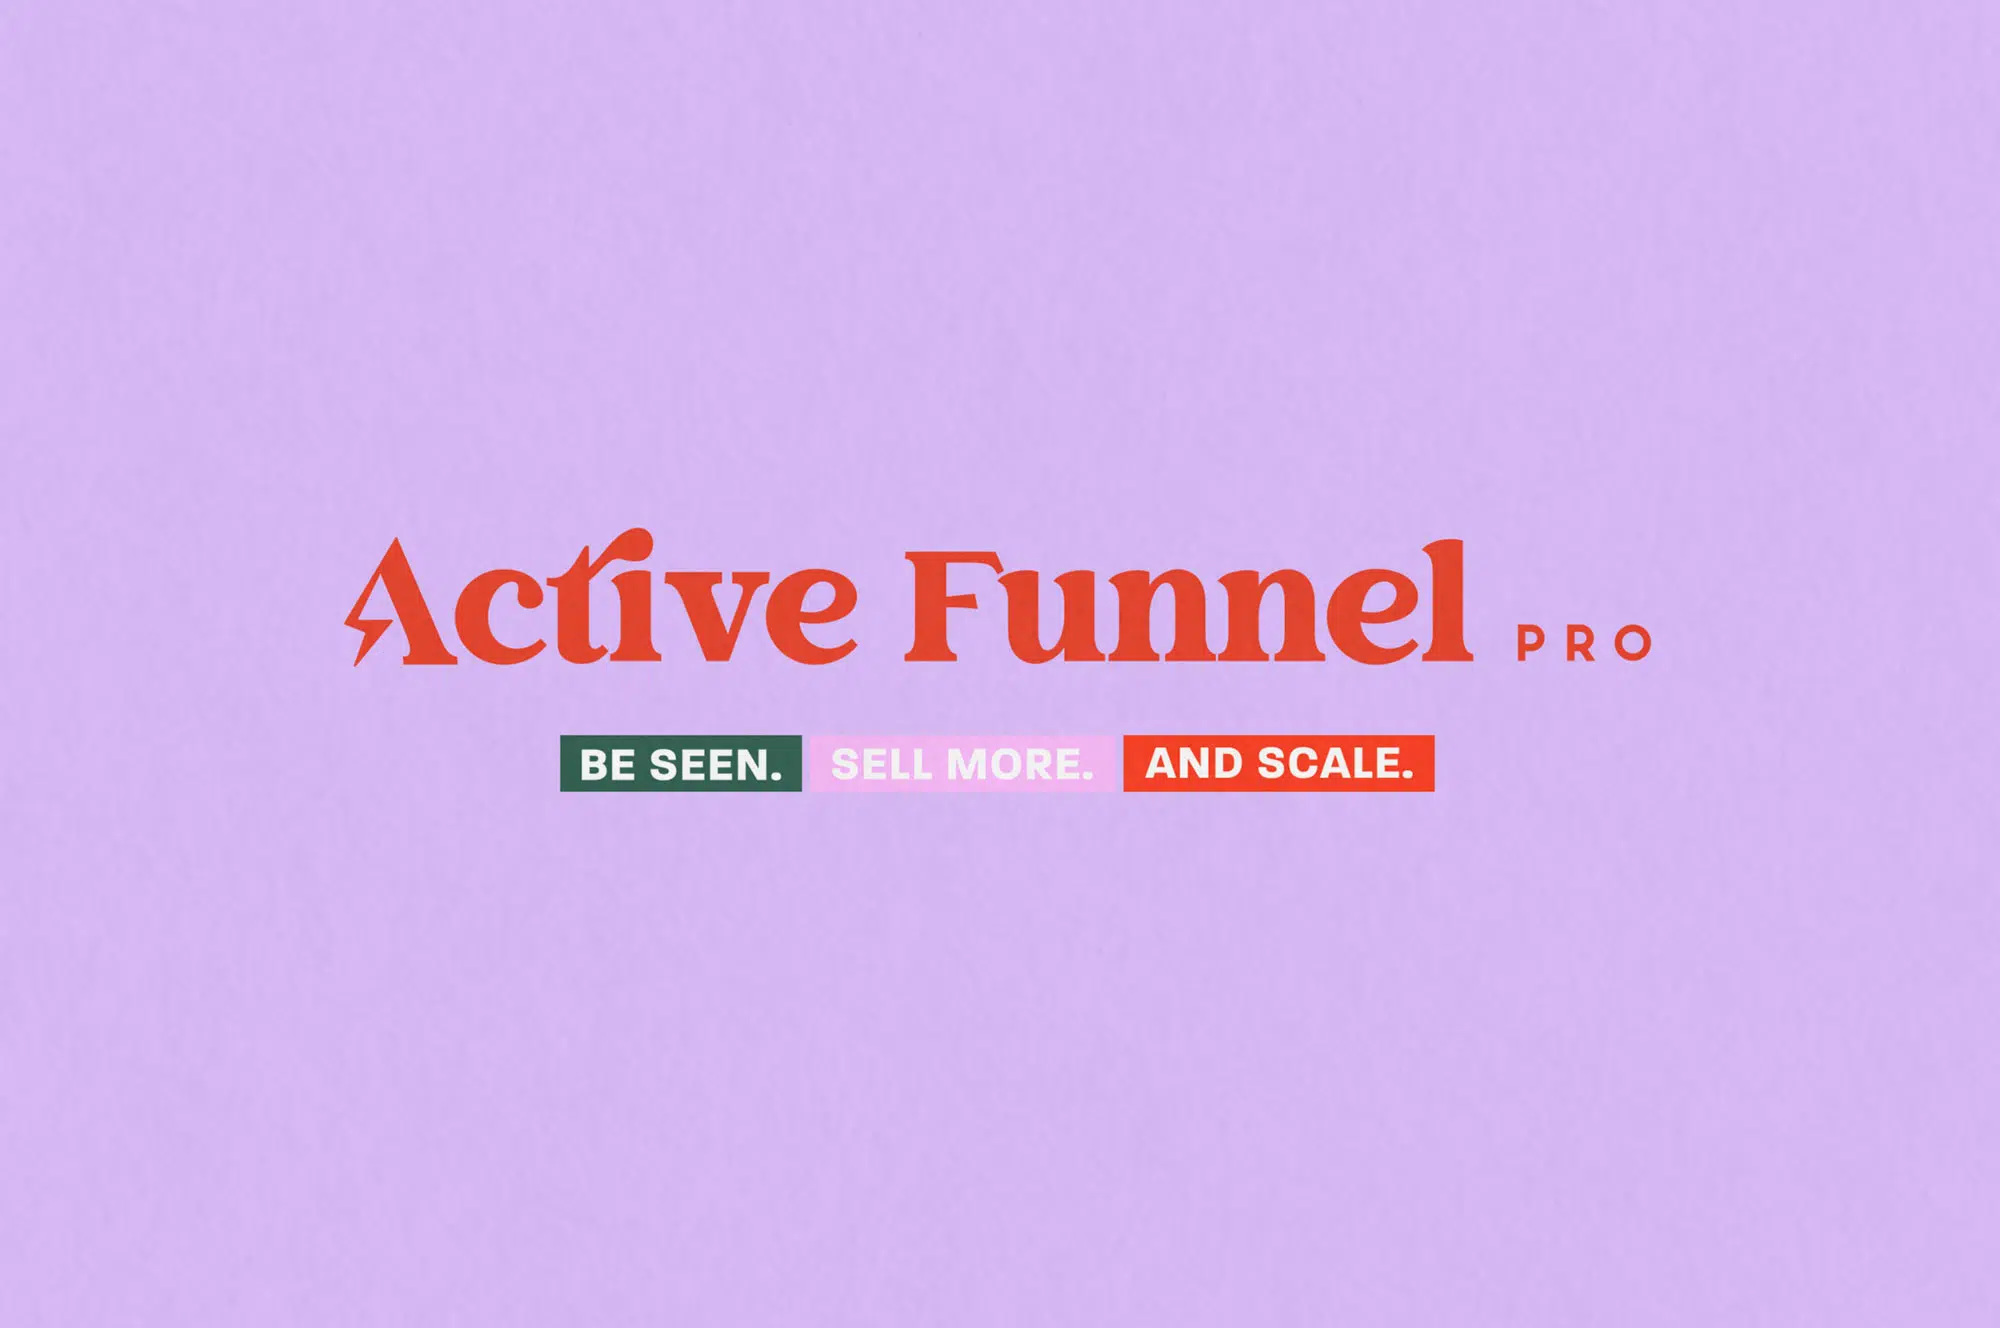 active funnel pro logo design brisbane